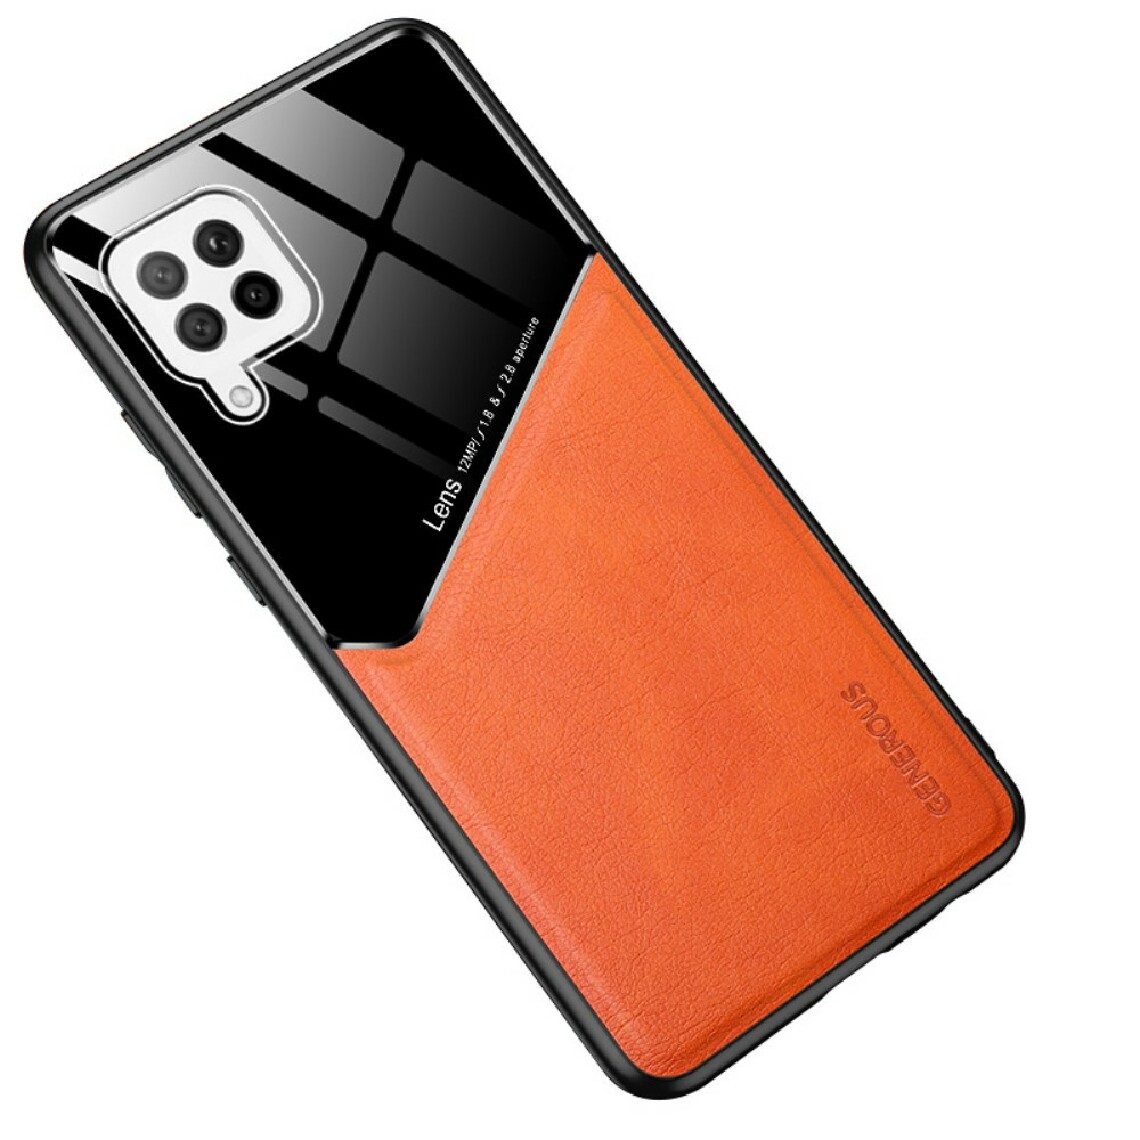 Other - Coque en TPU verre combiné enduit de feuille magnétique intégré orange pour votre Samsung Galaxy A42 5G - Coque, étui smartphone